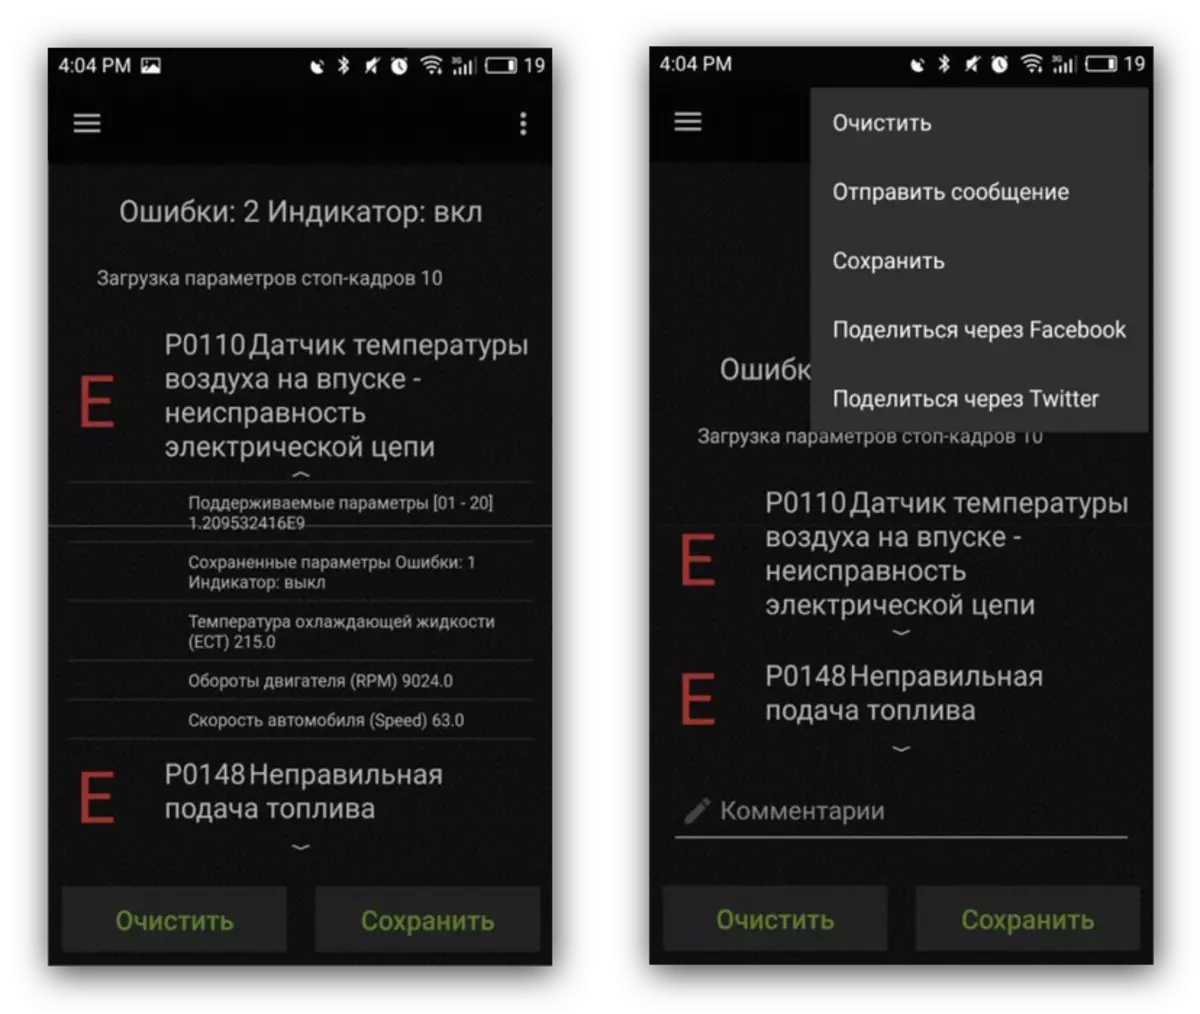 Accesso errori e inviare opzioni per l'utilizzo di ELM327 su Android tramite Incardoc